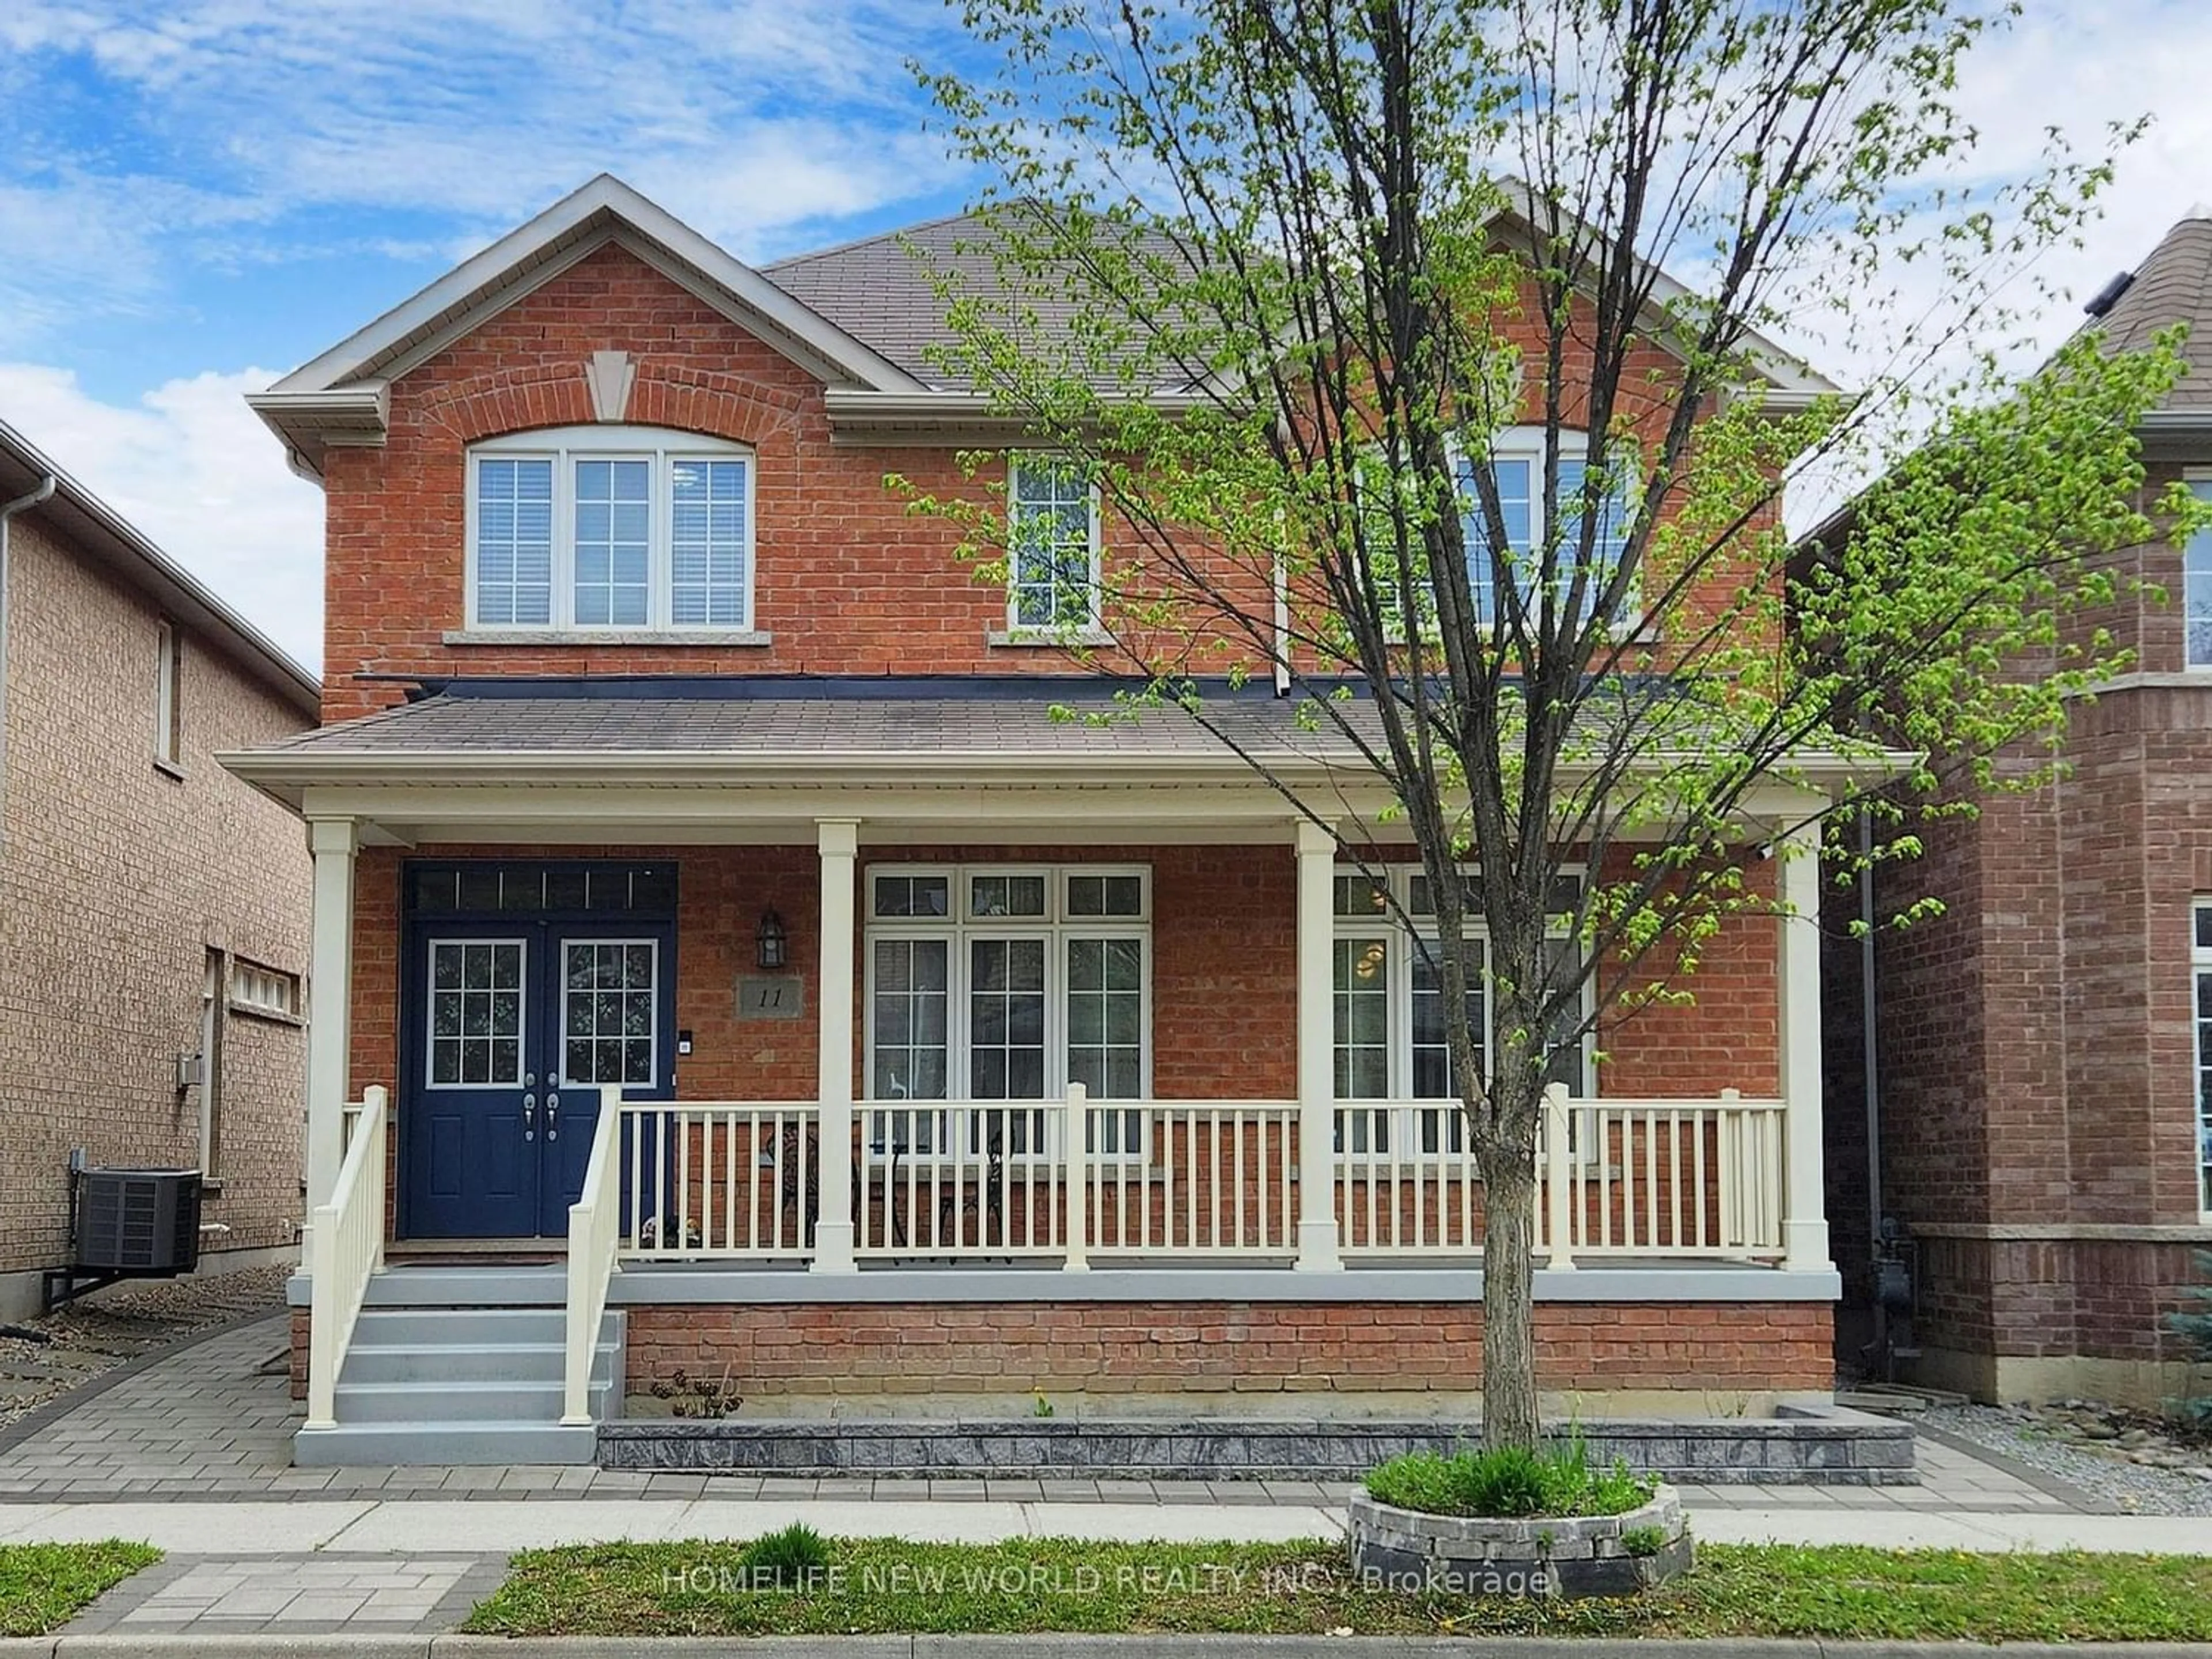 Home with brick exterior material for 11 Honey Glen Ave, Markham Ontario L6B 0V1